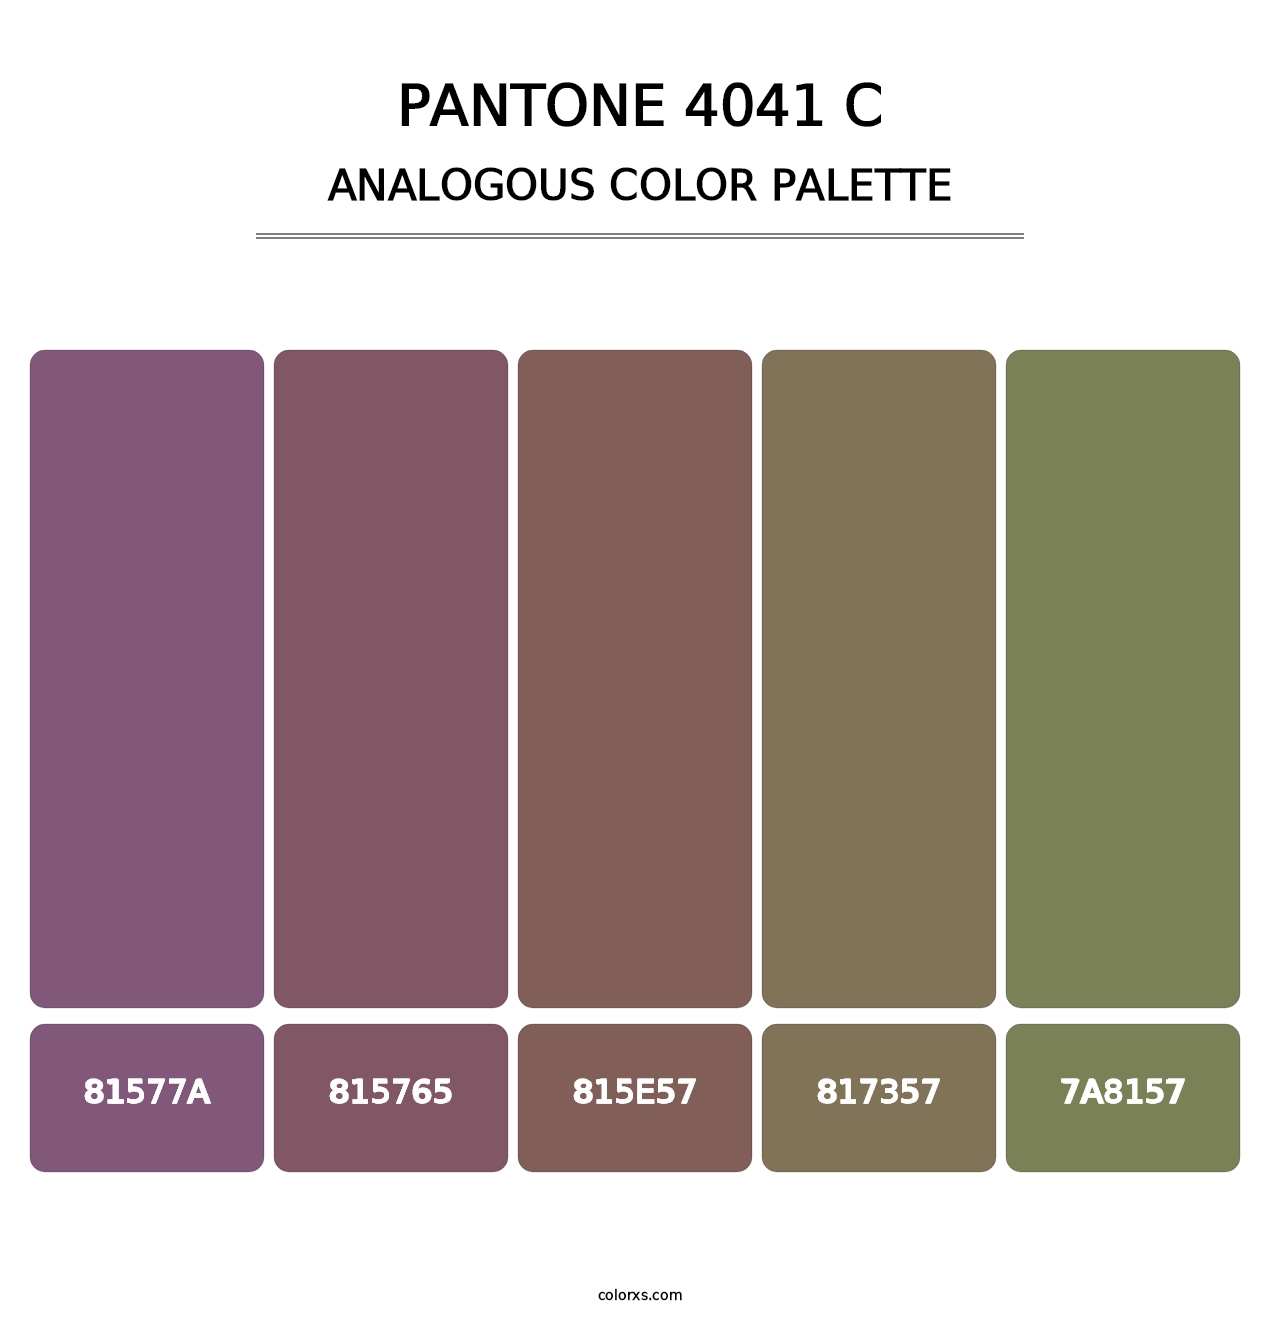 PANTONE 4041 C - Analogous Color Palette